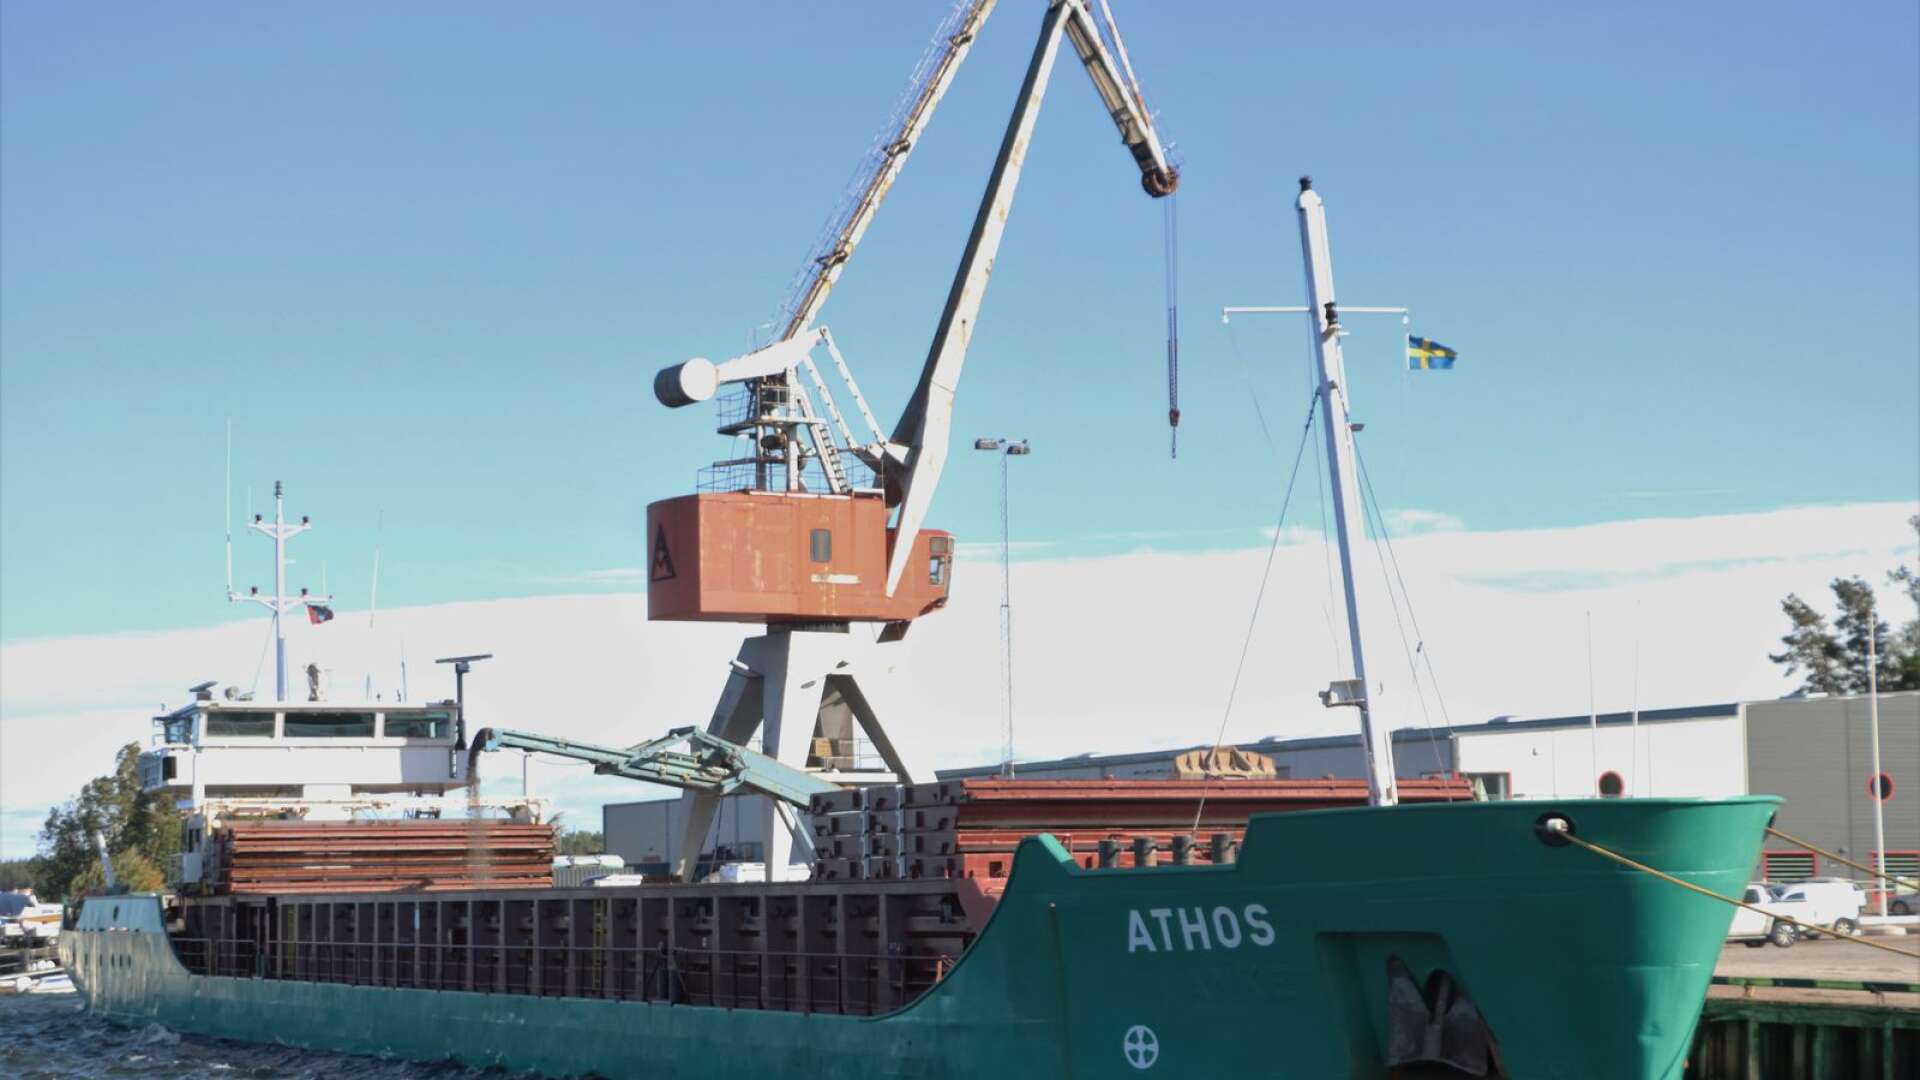 Åmål överväger att sälja sitt aktieinnehav i Vänerhamn AB, då kommunen inte får ut något av delägarskapet. Åmåls hamn används för närvarande bara av Euro Sand. 2021 transporterade bolaget 80 000 ton specialsten och kross med båt från hamnen.